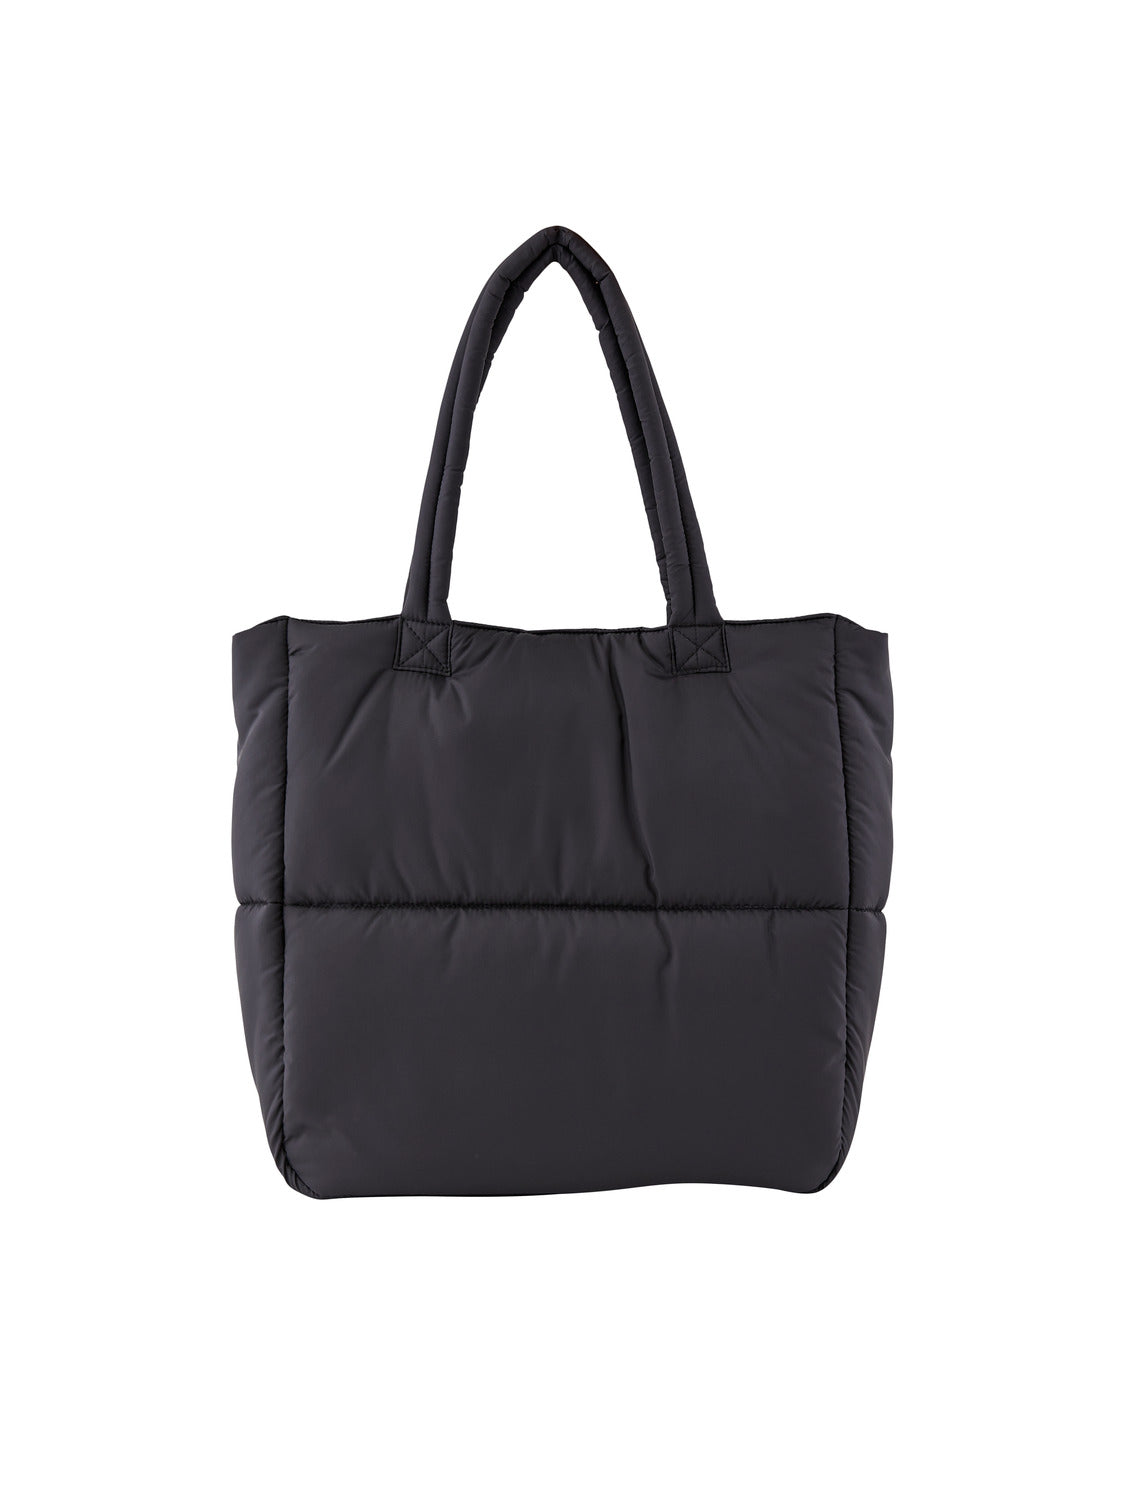 PCFULLA Handbag - Black